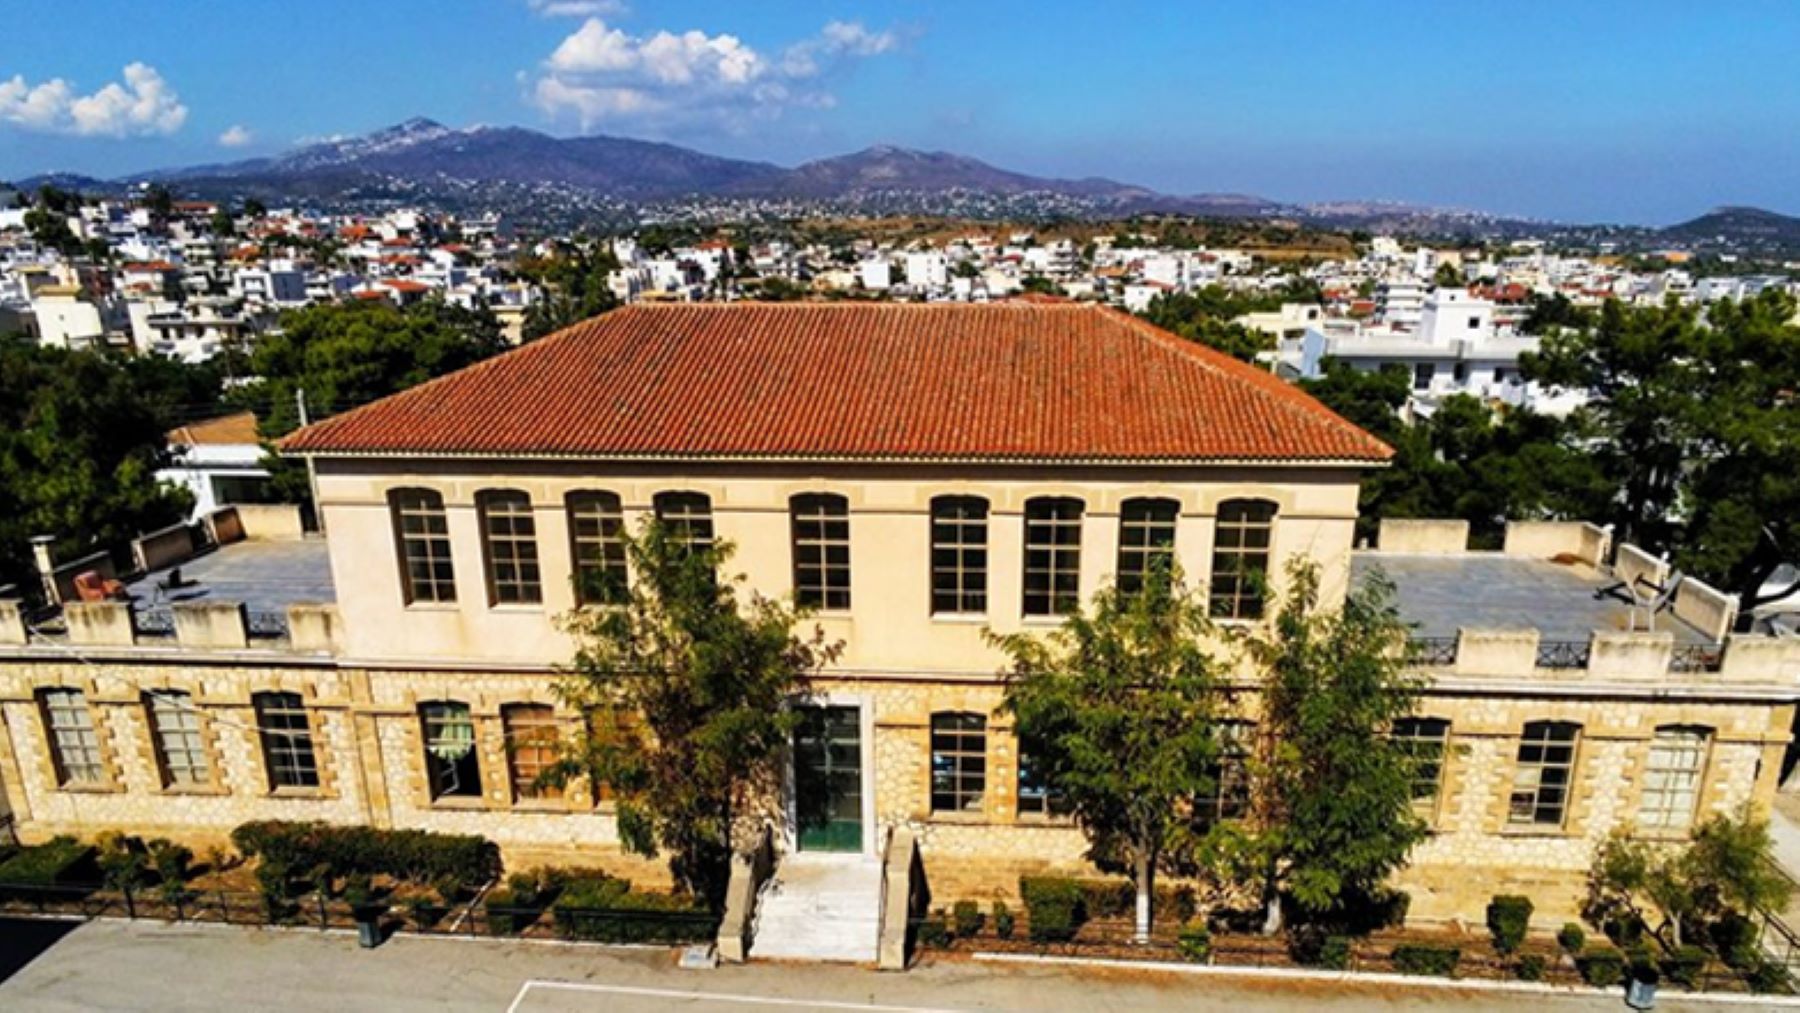 Δήμος Σπάτων – Αρτέμιδας: Αποκατάσταση ιστορικού κτηρίου 1ου Δημοτικού Σχολείου και επανάχρησή του ως πολυχώρος πολιτισμού